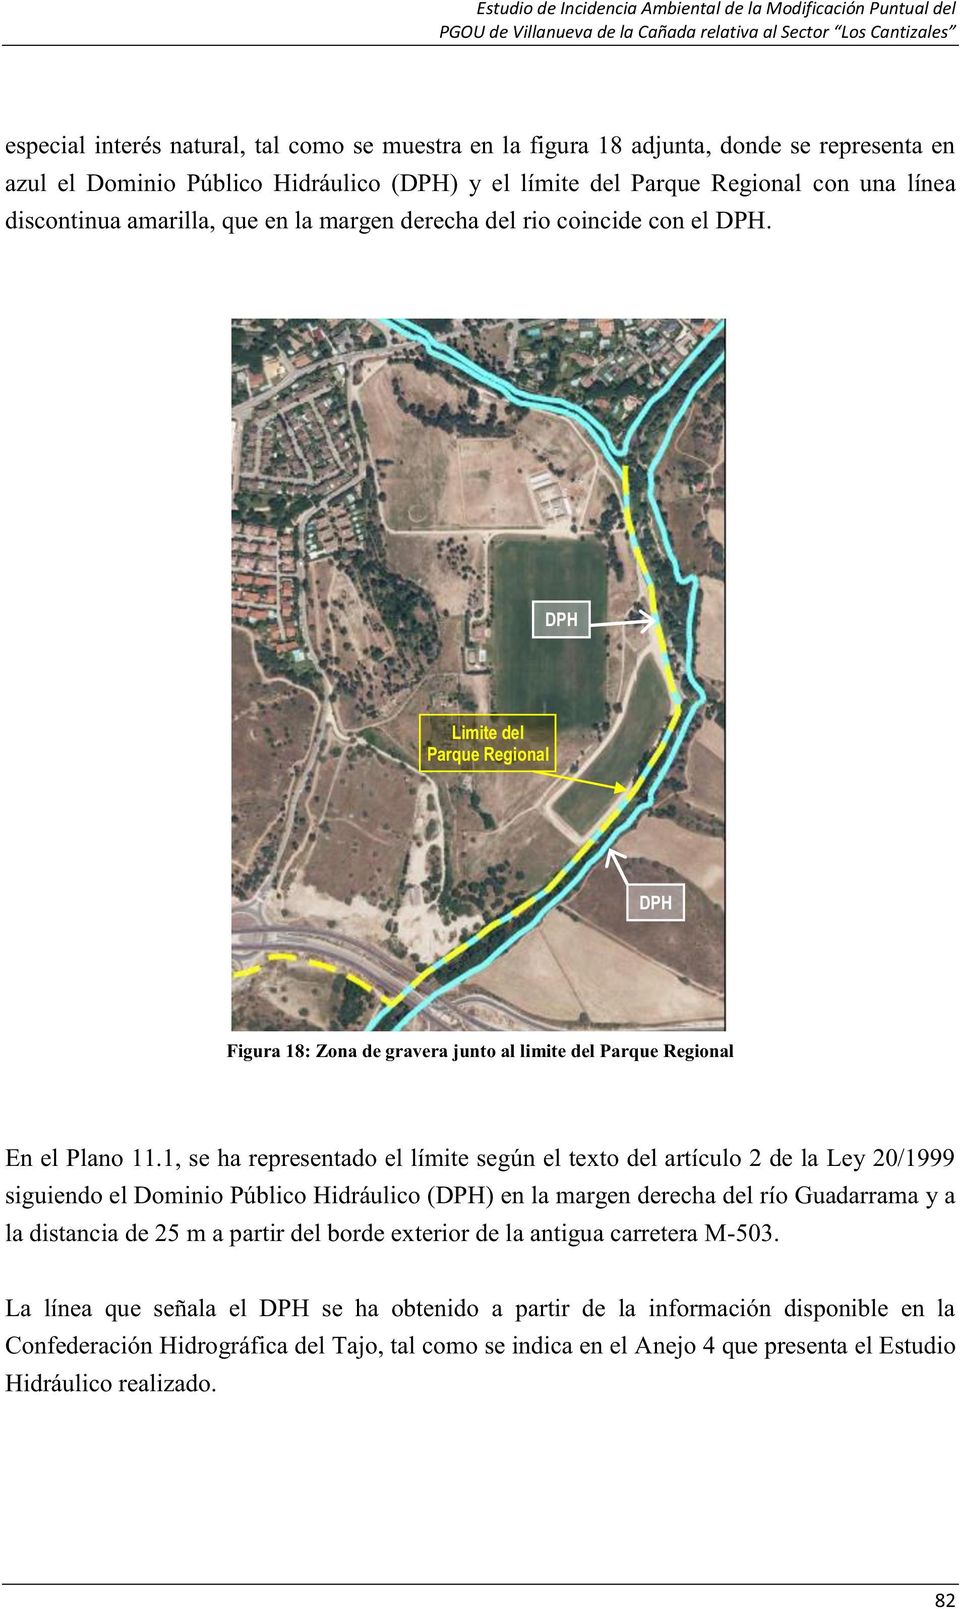 1, se ha representado el límite según el texto del artículo 2 de la Ley 20/1999 siguiendo el Dominio Público Hidráulico (DPH) en la margen derecha del río Guadarrama y a la distancia de 25 m a partir